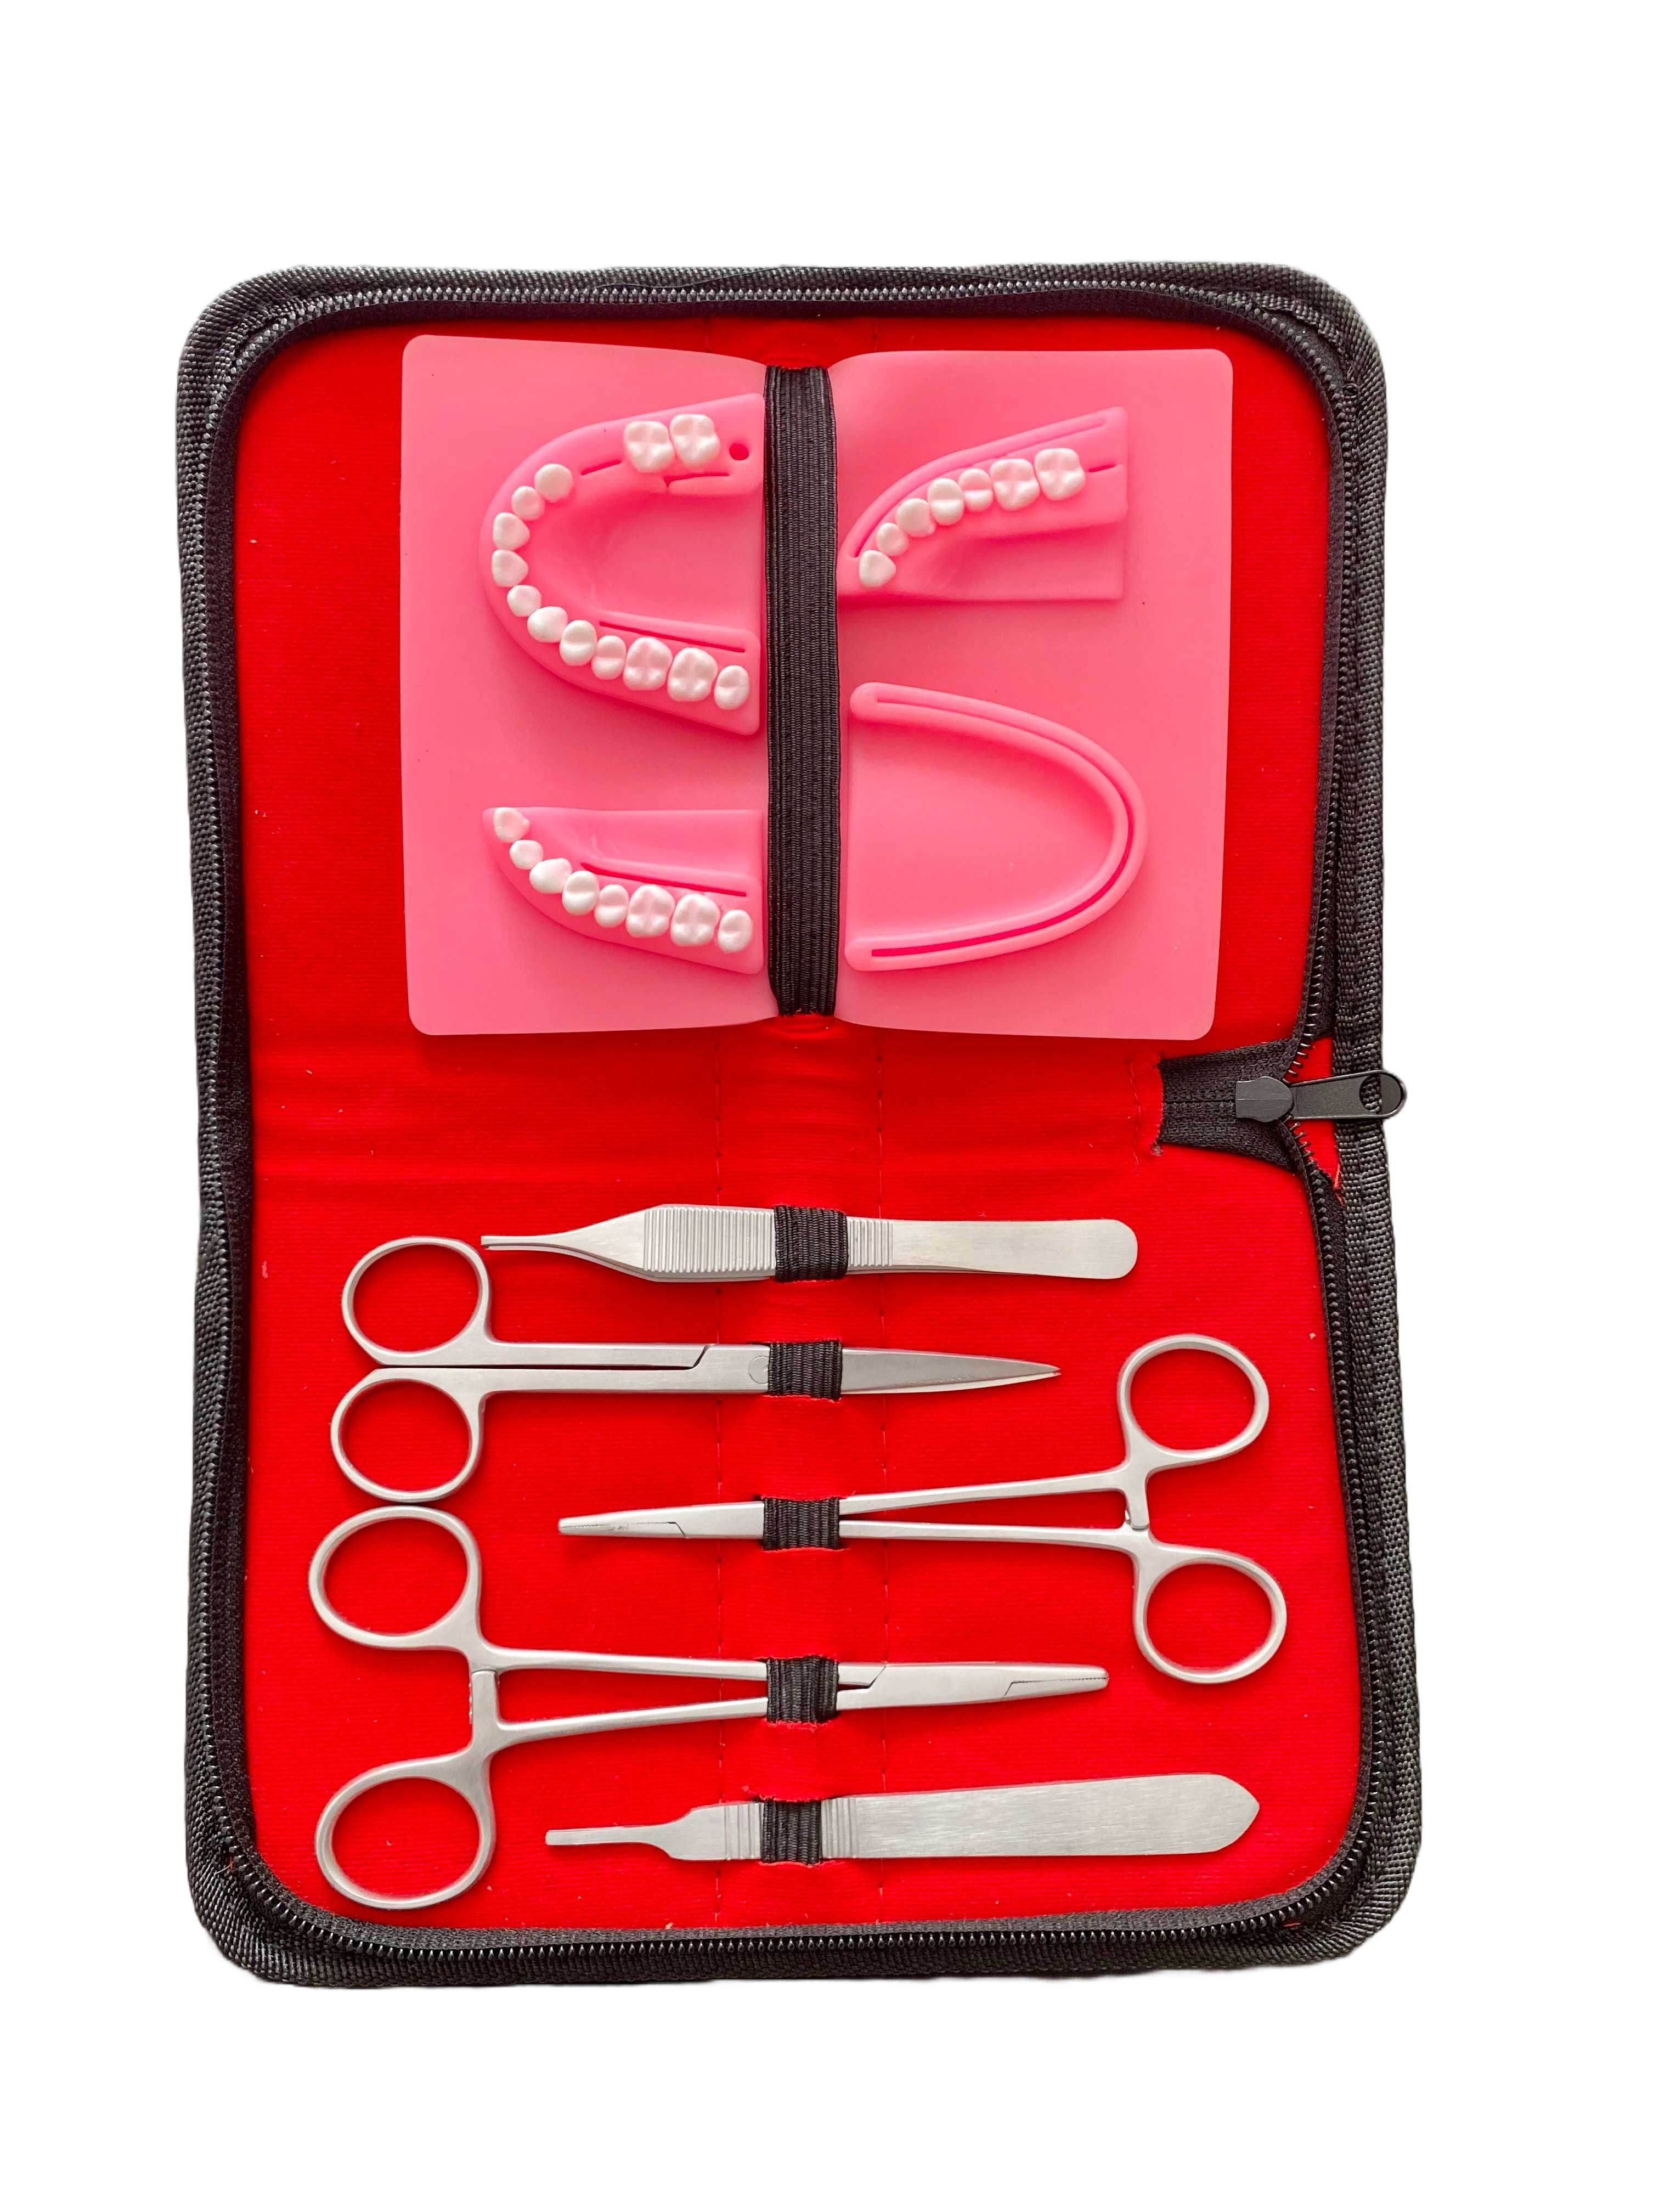 Kit pentru practicarea suturilor chirurgicale dentare, Suture Expert